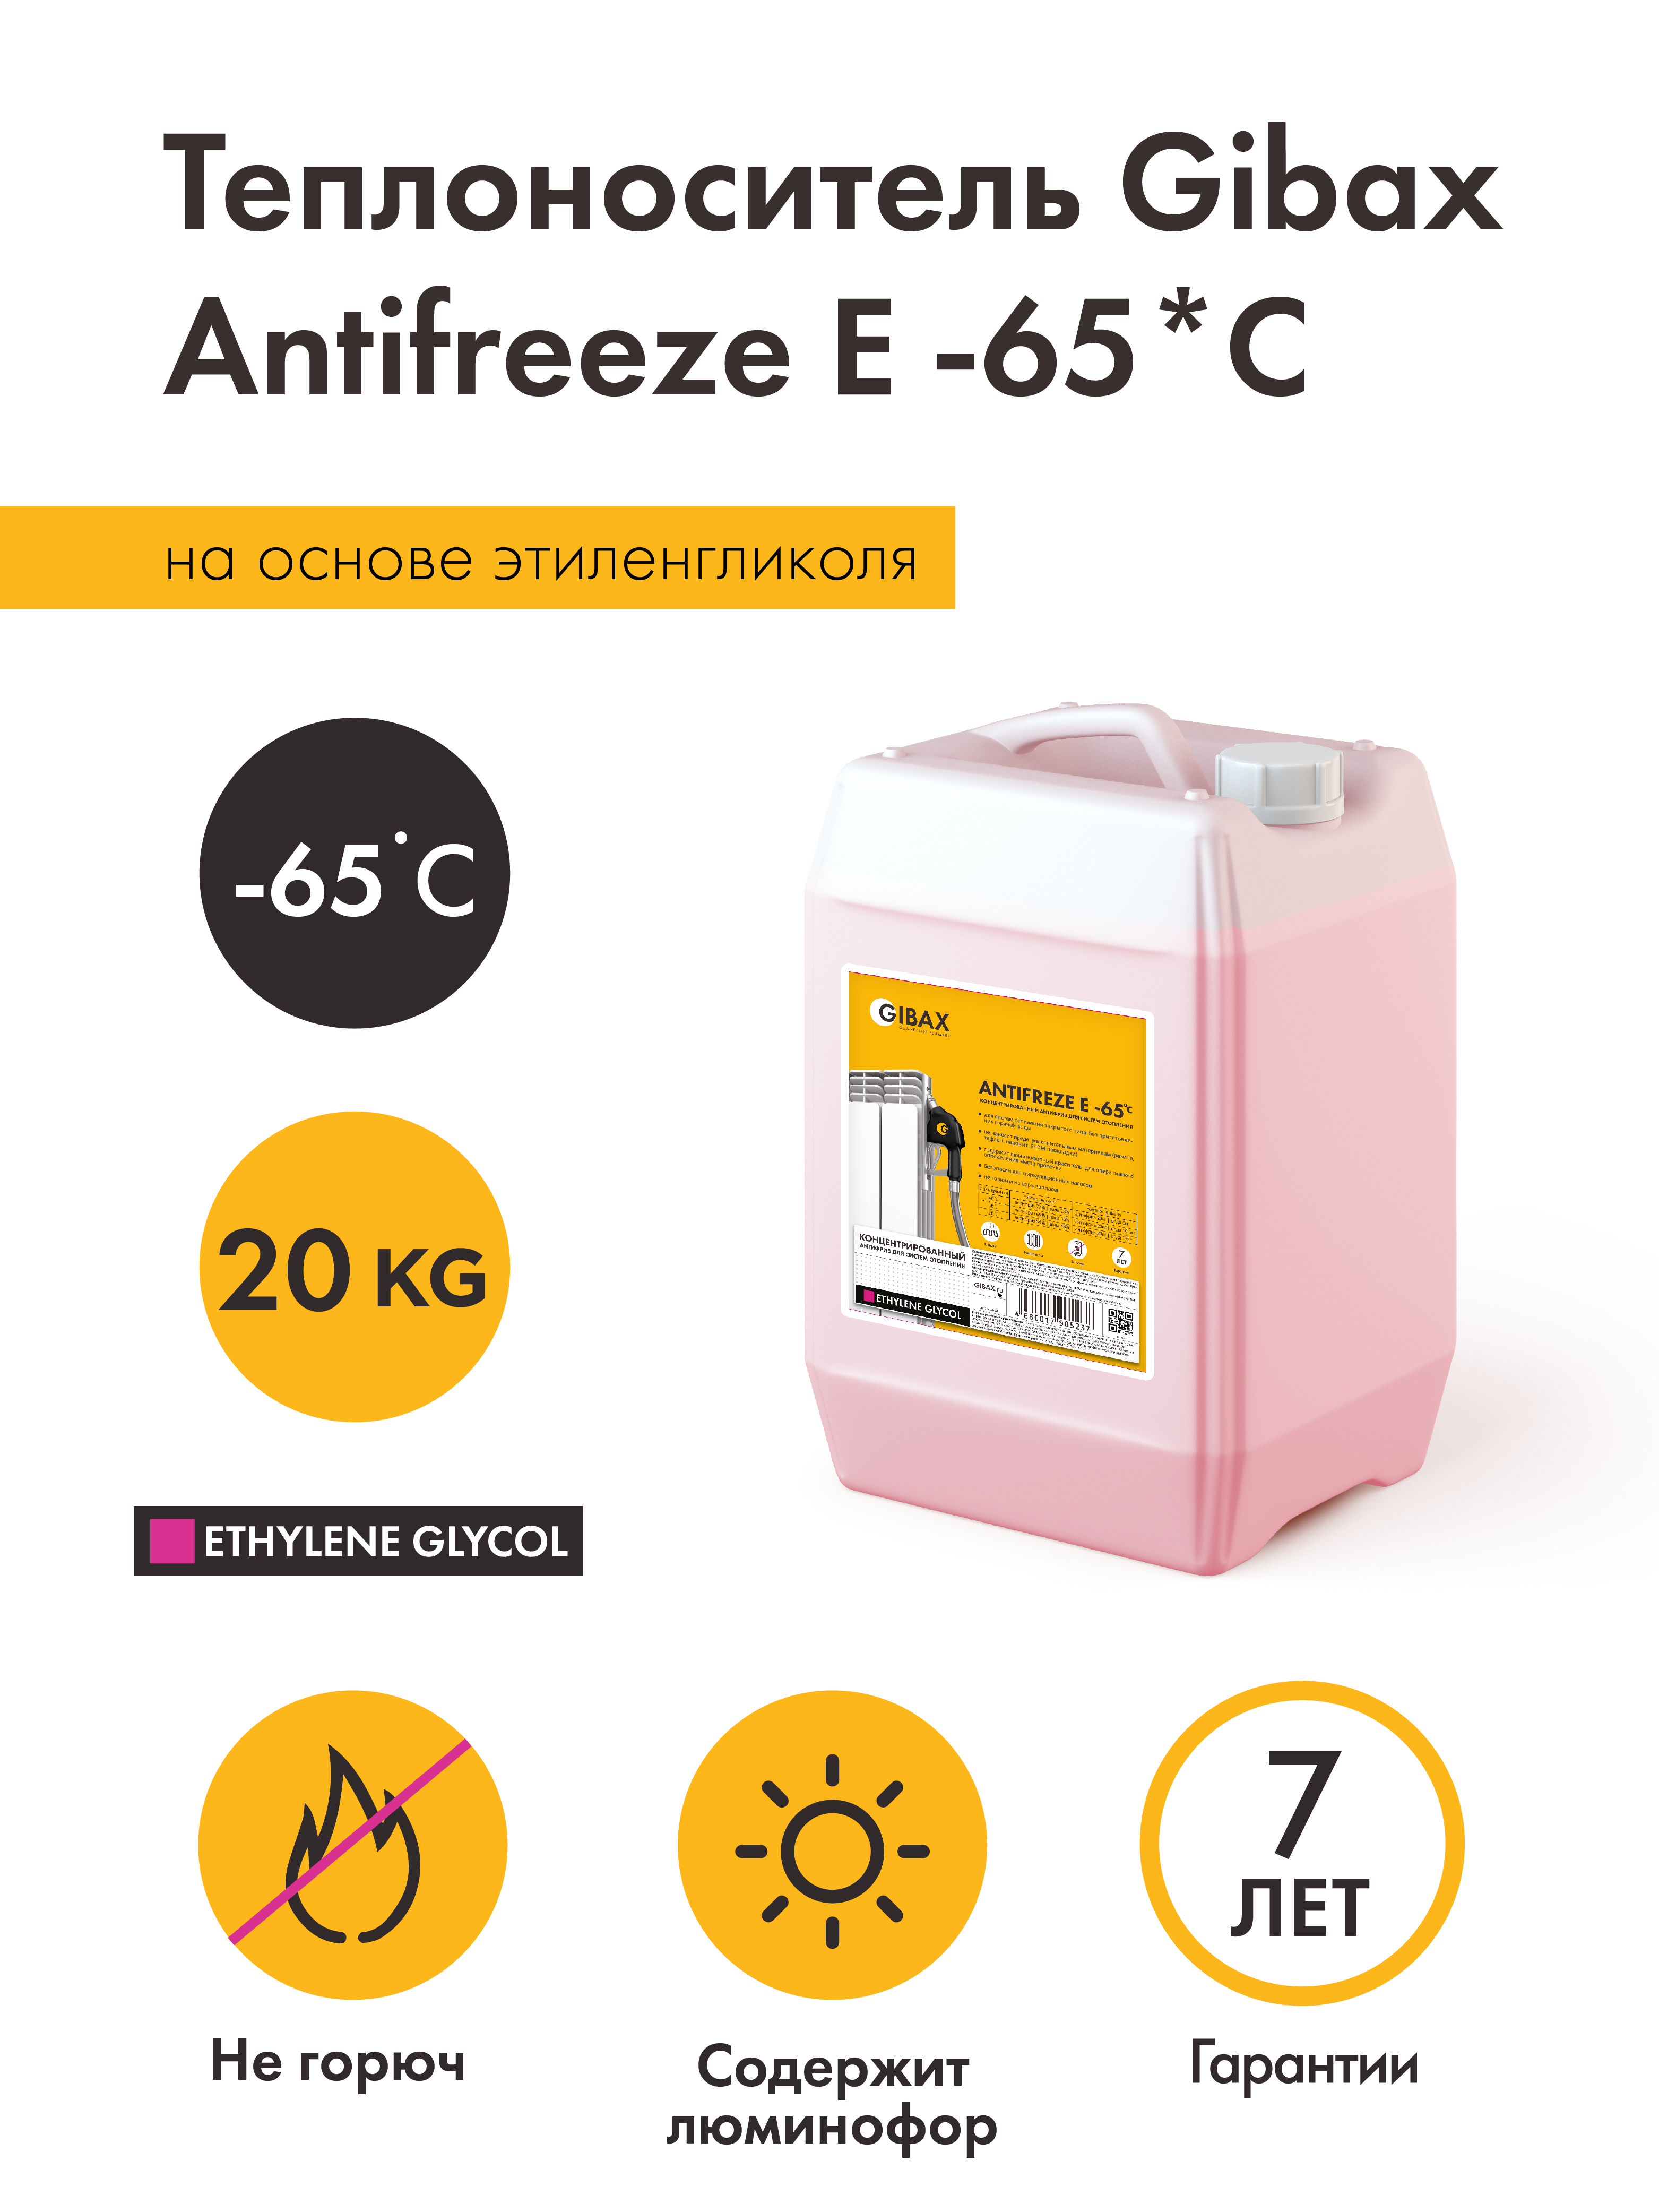 Теплоноситель Antifreeze -65*С 20кг, на основе этиленгликоля